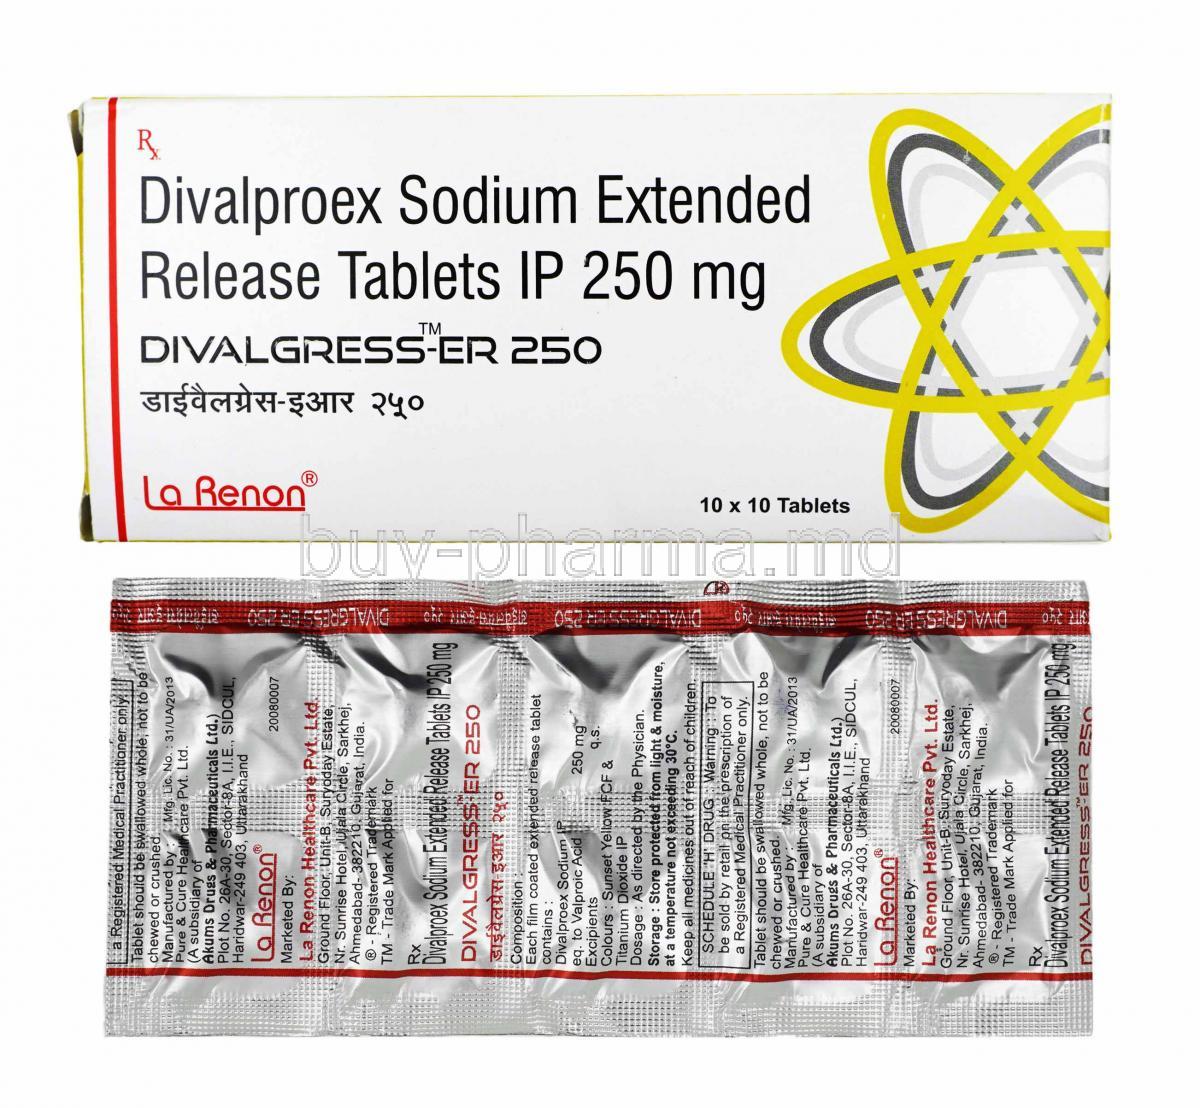 Divalgress, Divalproex 250mg box and tablets